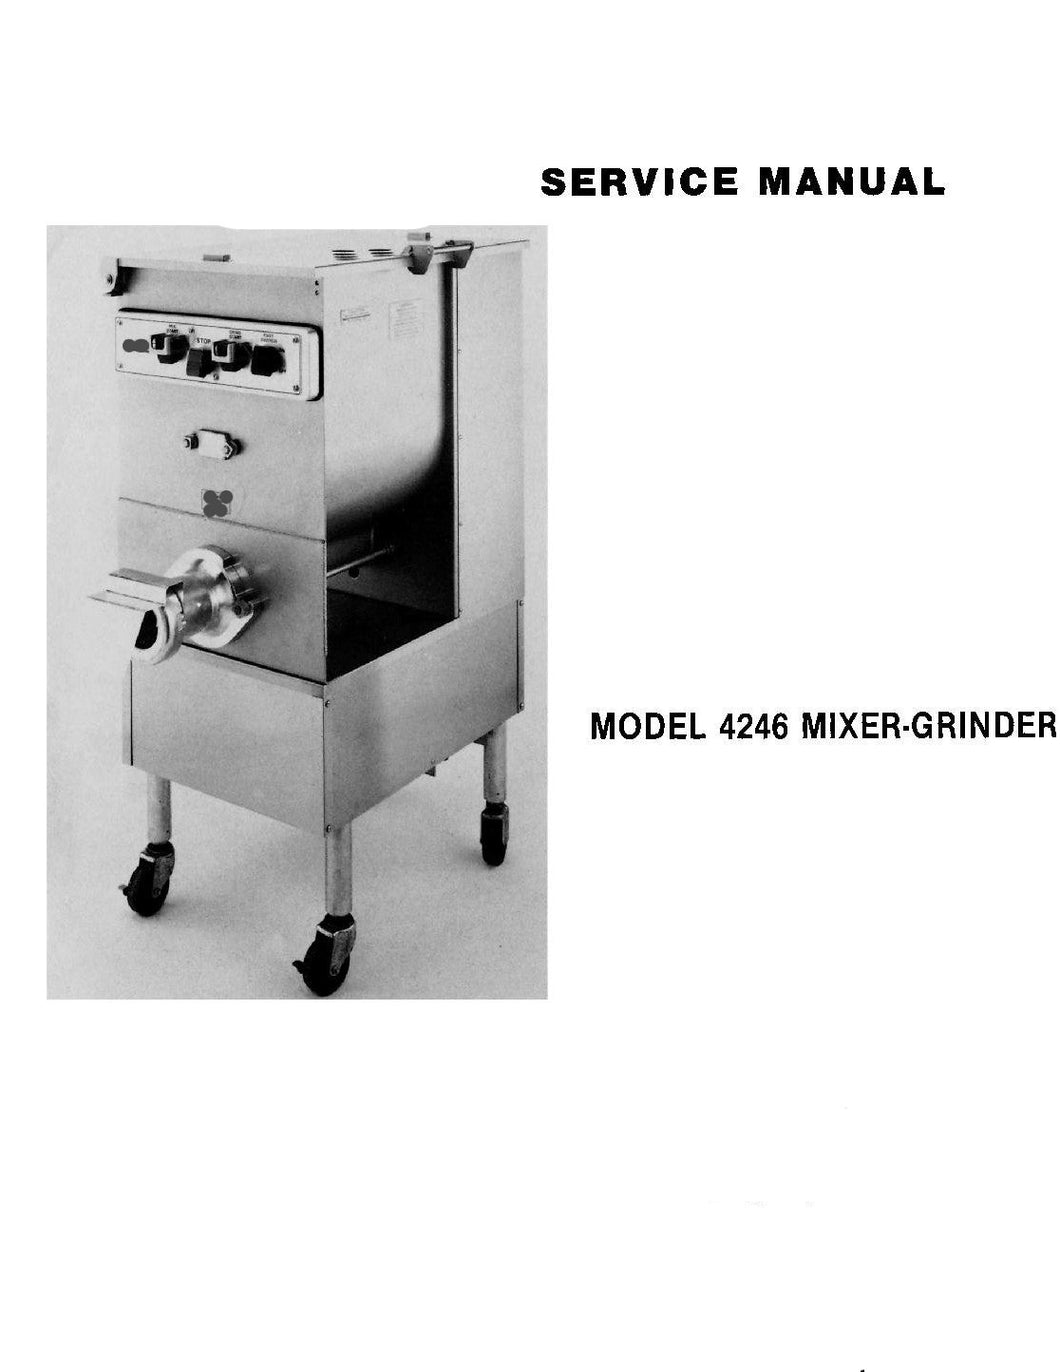 HOBART MODEL 4246 MIXER GRINDER SERVICE, TECHNICAL AND REPAIR MANUALS PDF